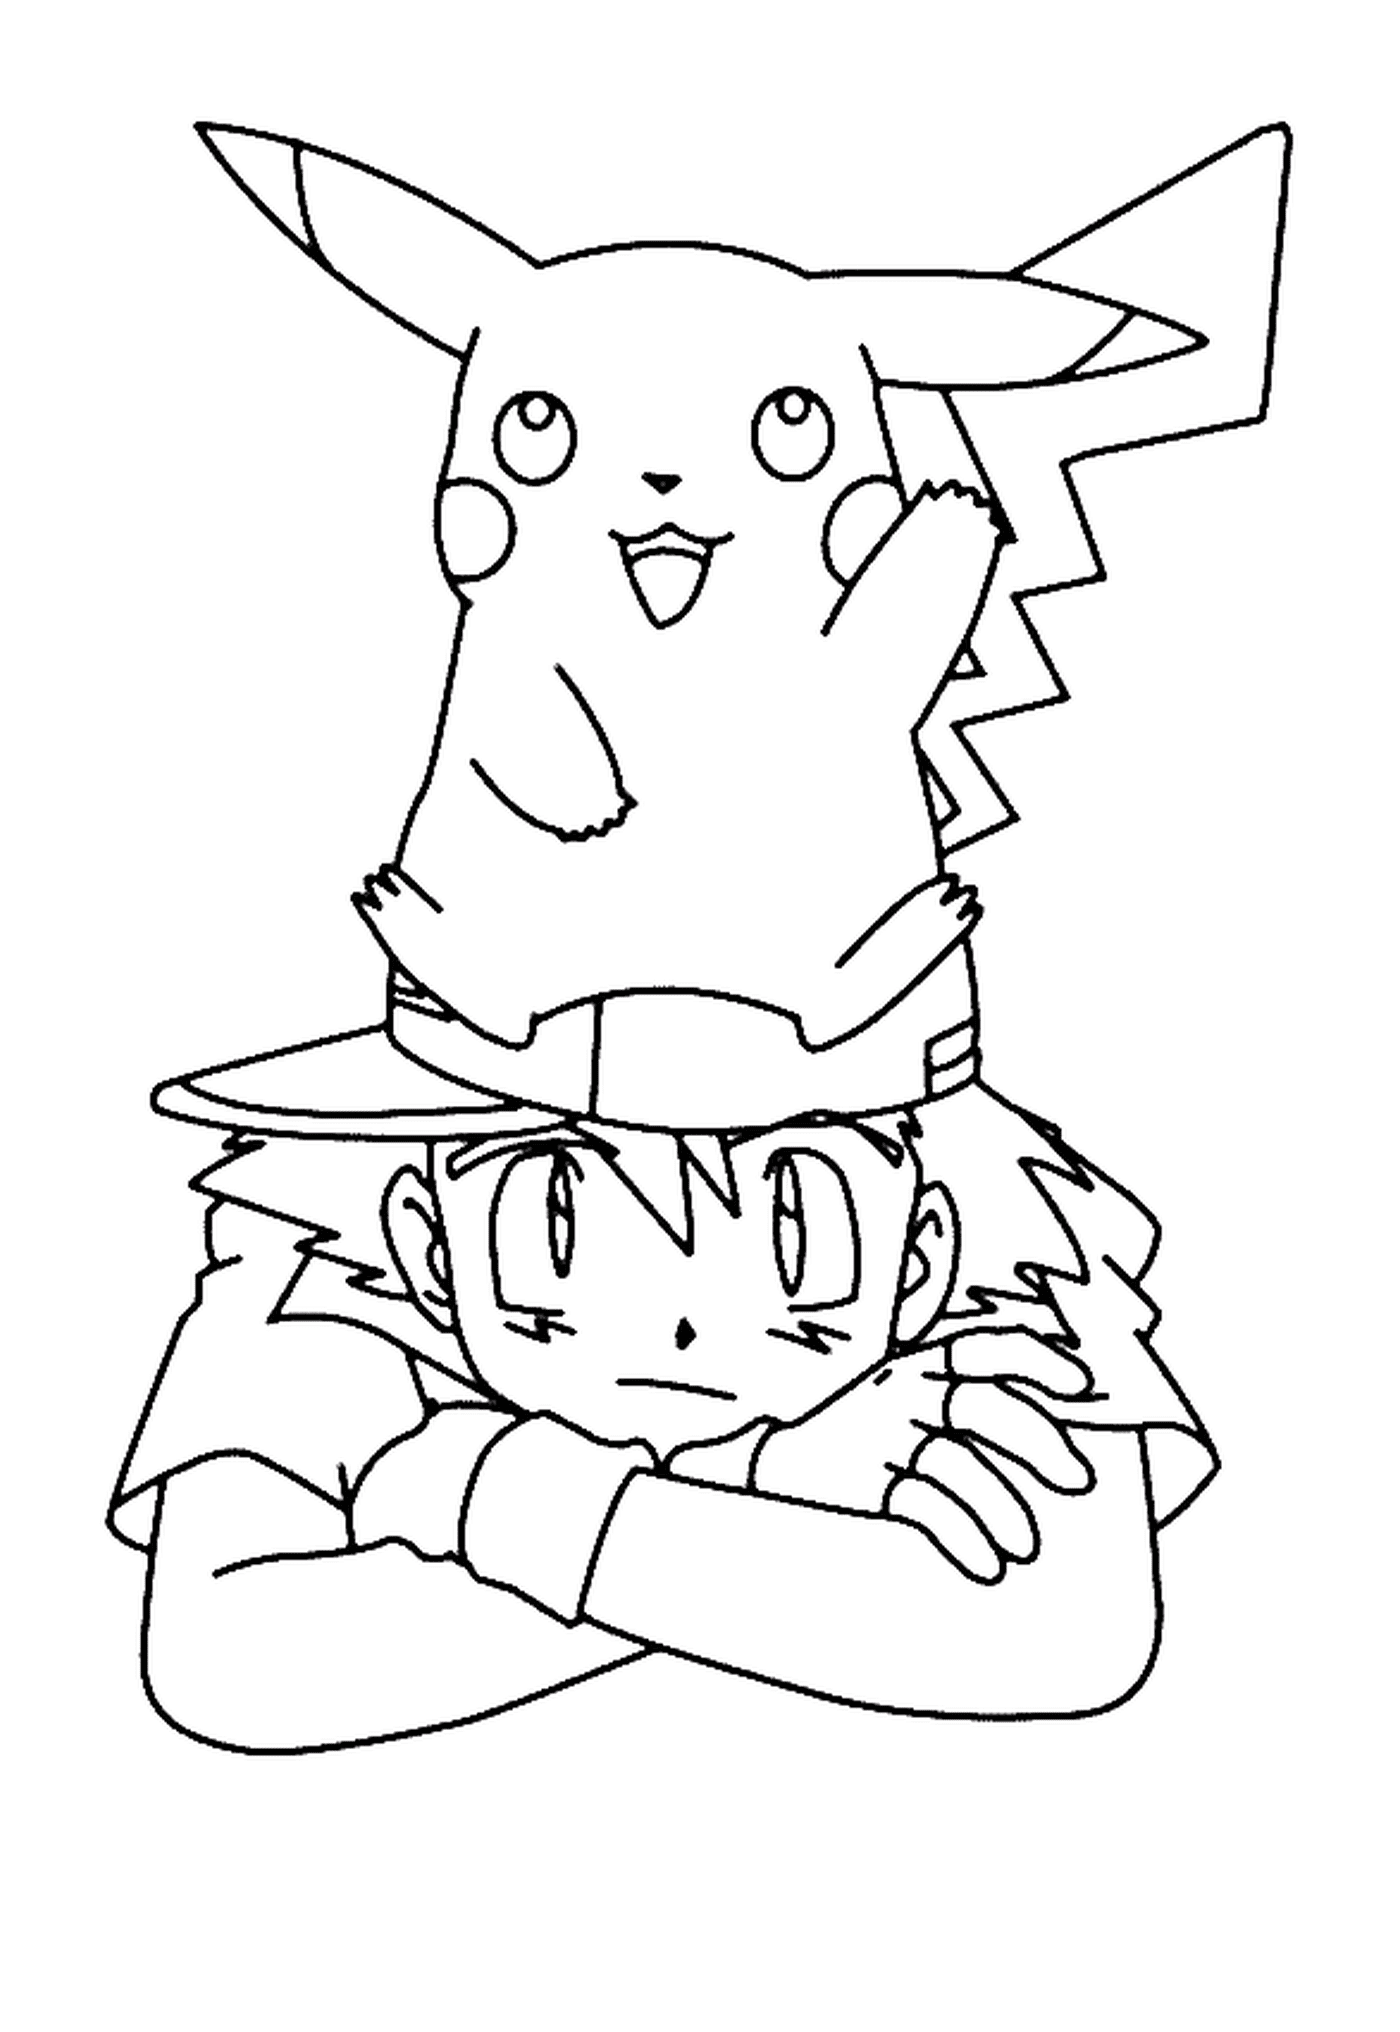  Um menino e Pikachu juntos 